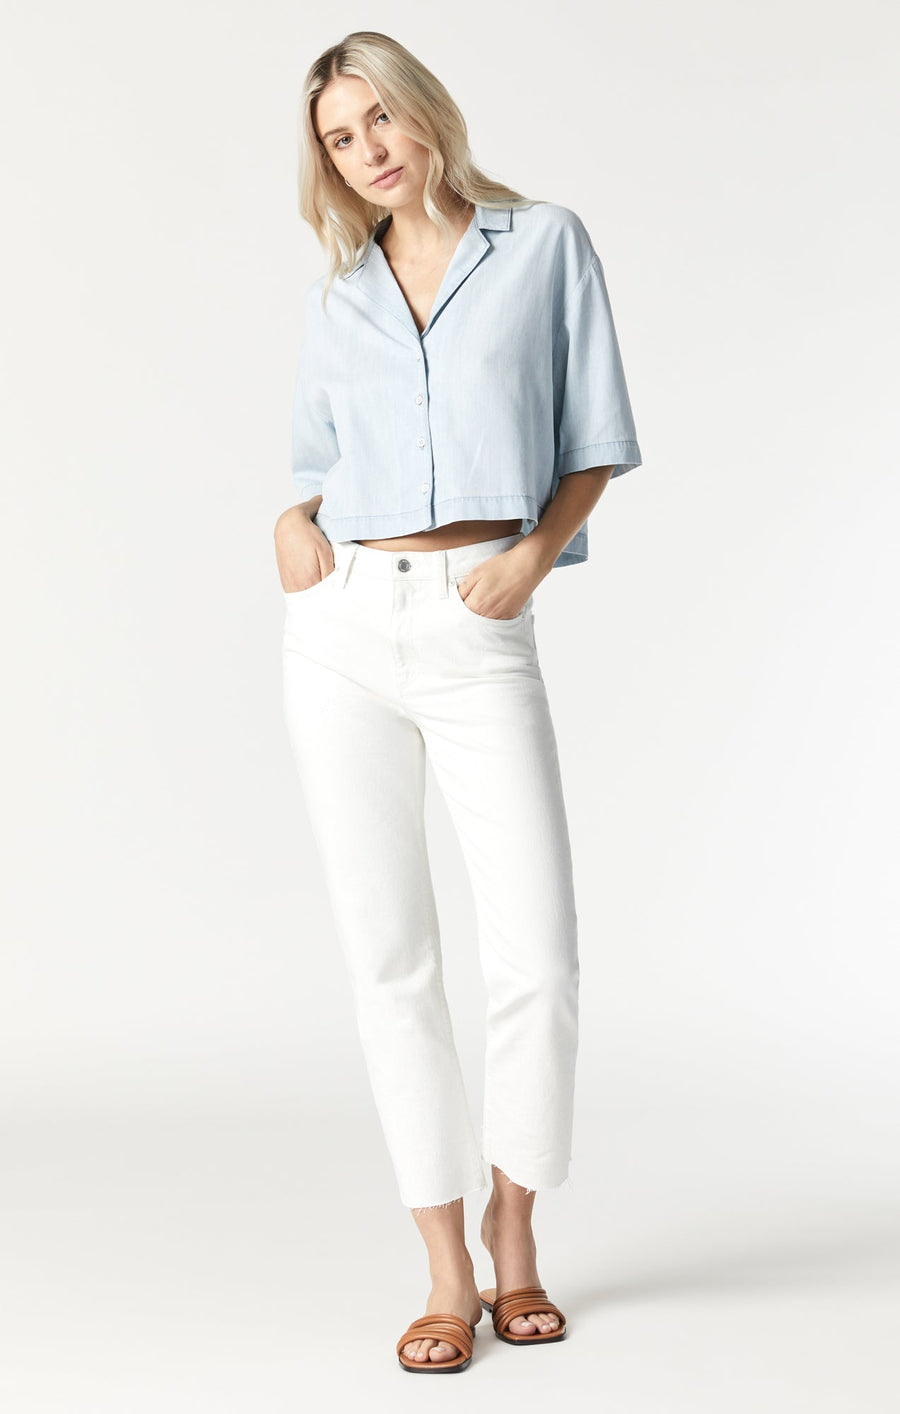 Berry Denim Shirt - Blue Sky Clothing & Lingerie